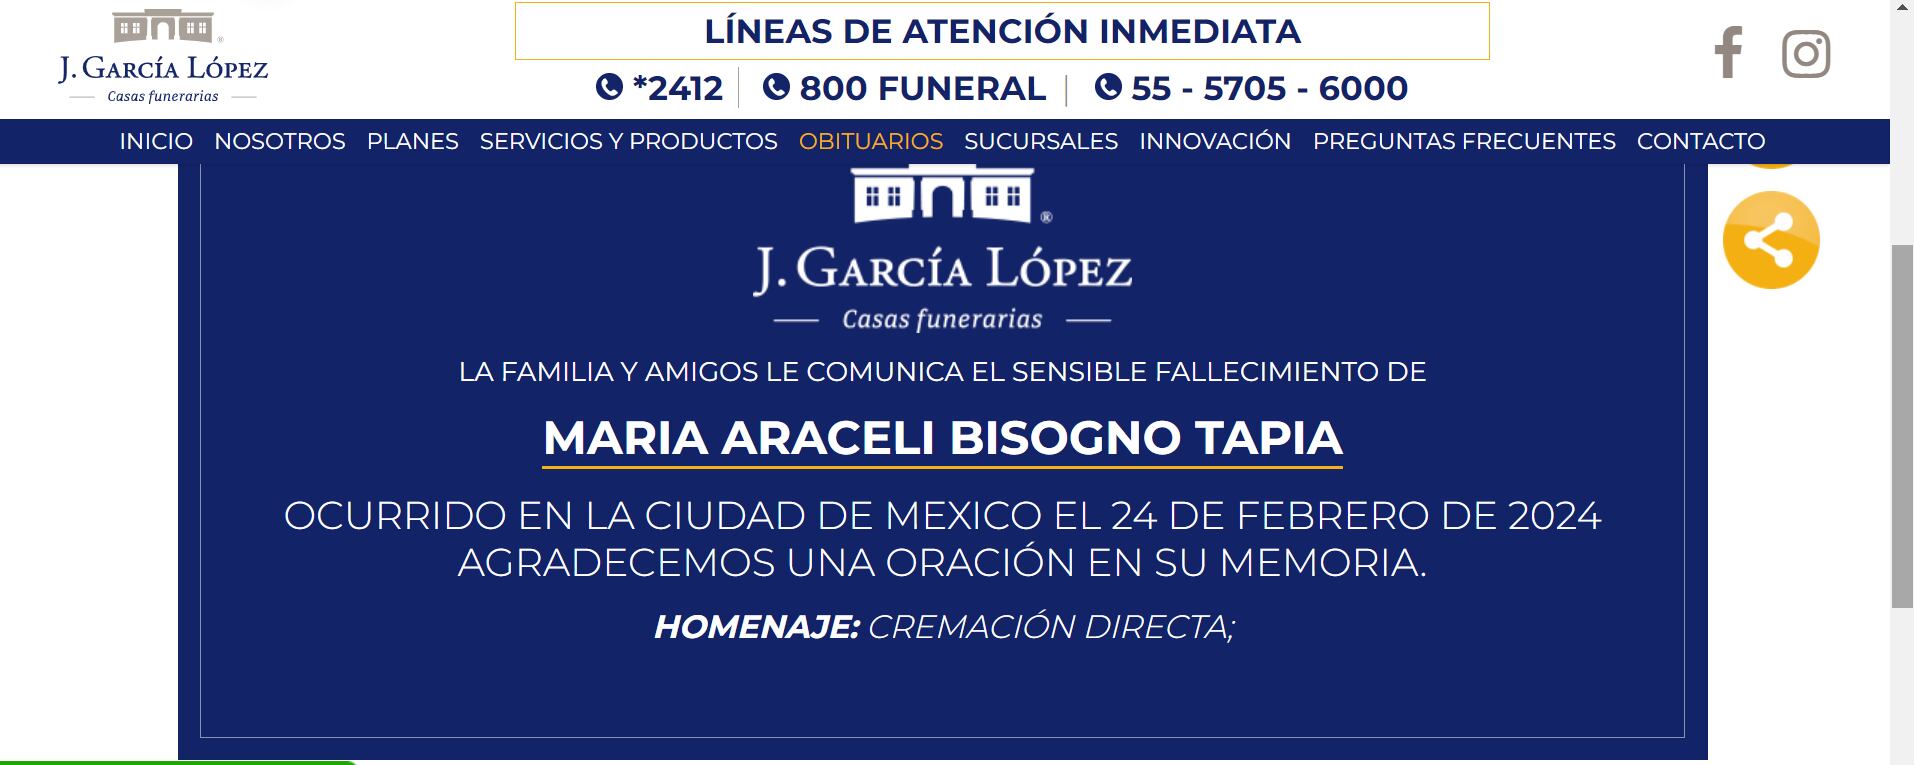 La funeraria J. García López anunció que Araceli Bisogno sería cremada.